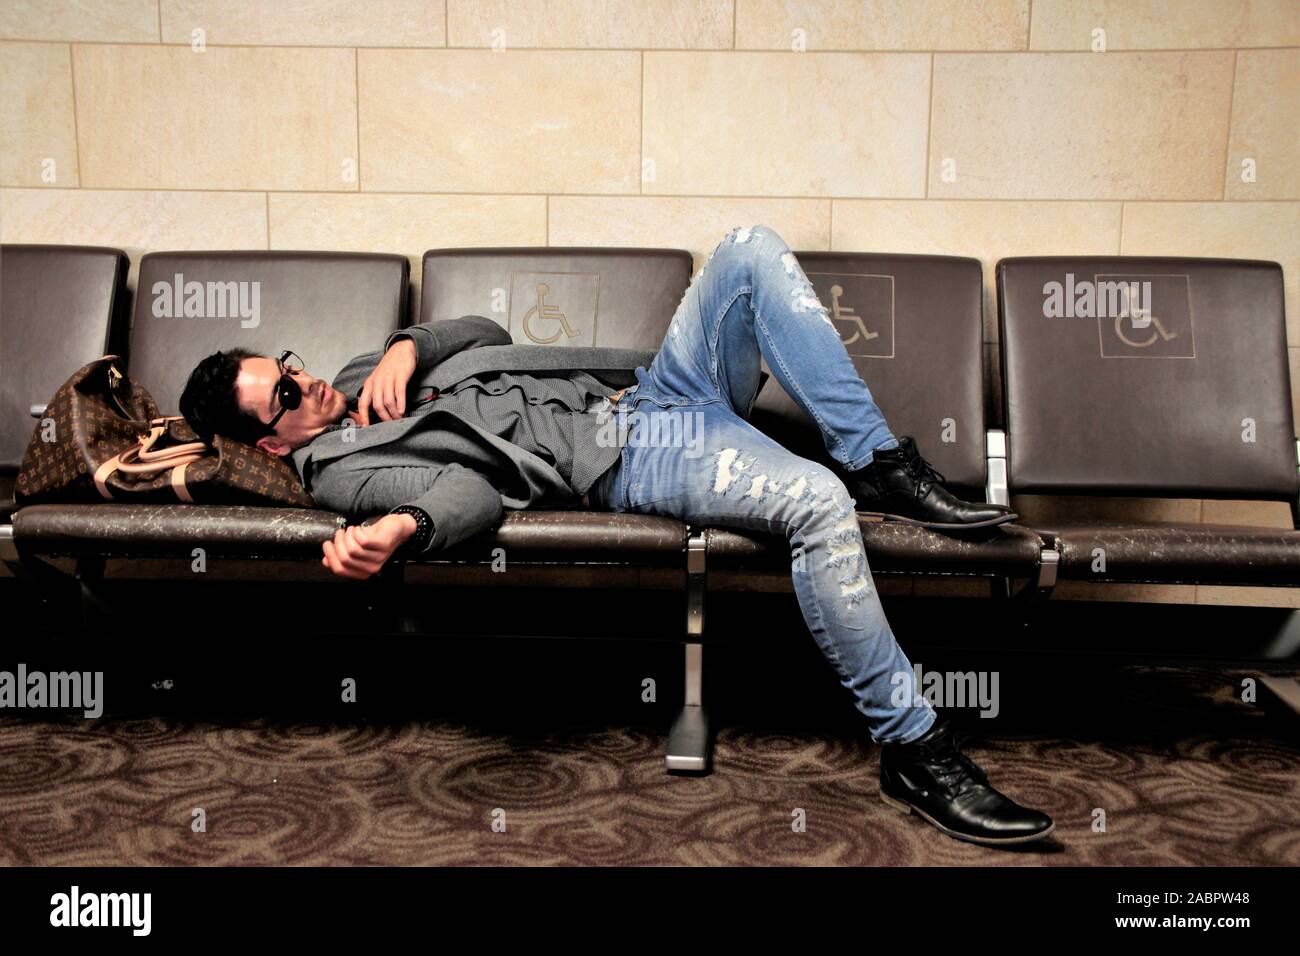 Ein blind auf einem Auge, kaukasische Mann schlafen in Phoenix Airport während des Wartens auf sein Flugzeug in das VEREINIGTE KÖNIGREICH Stockfoto